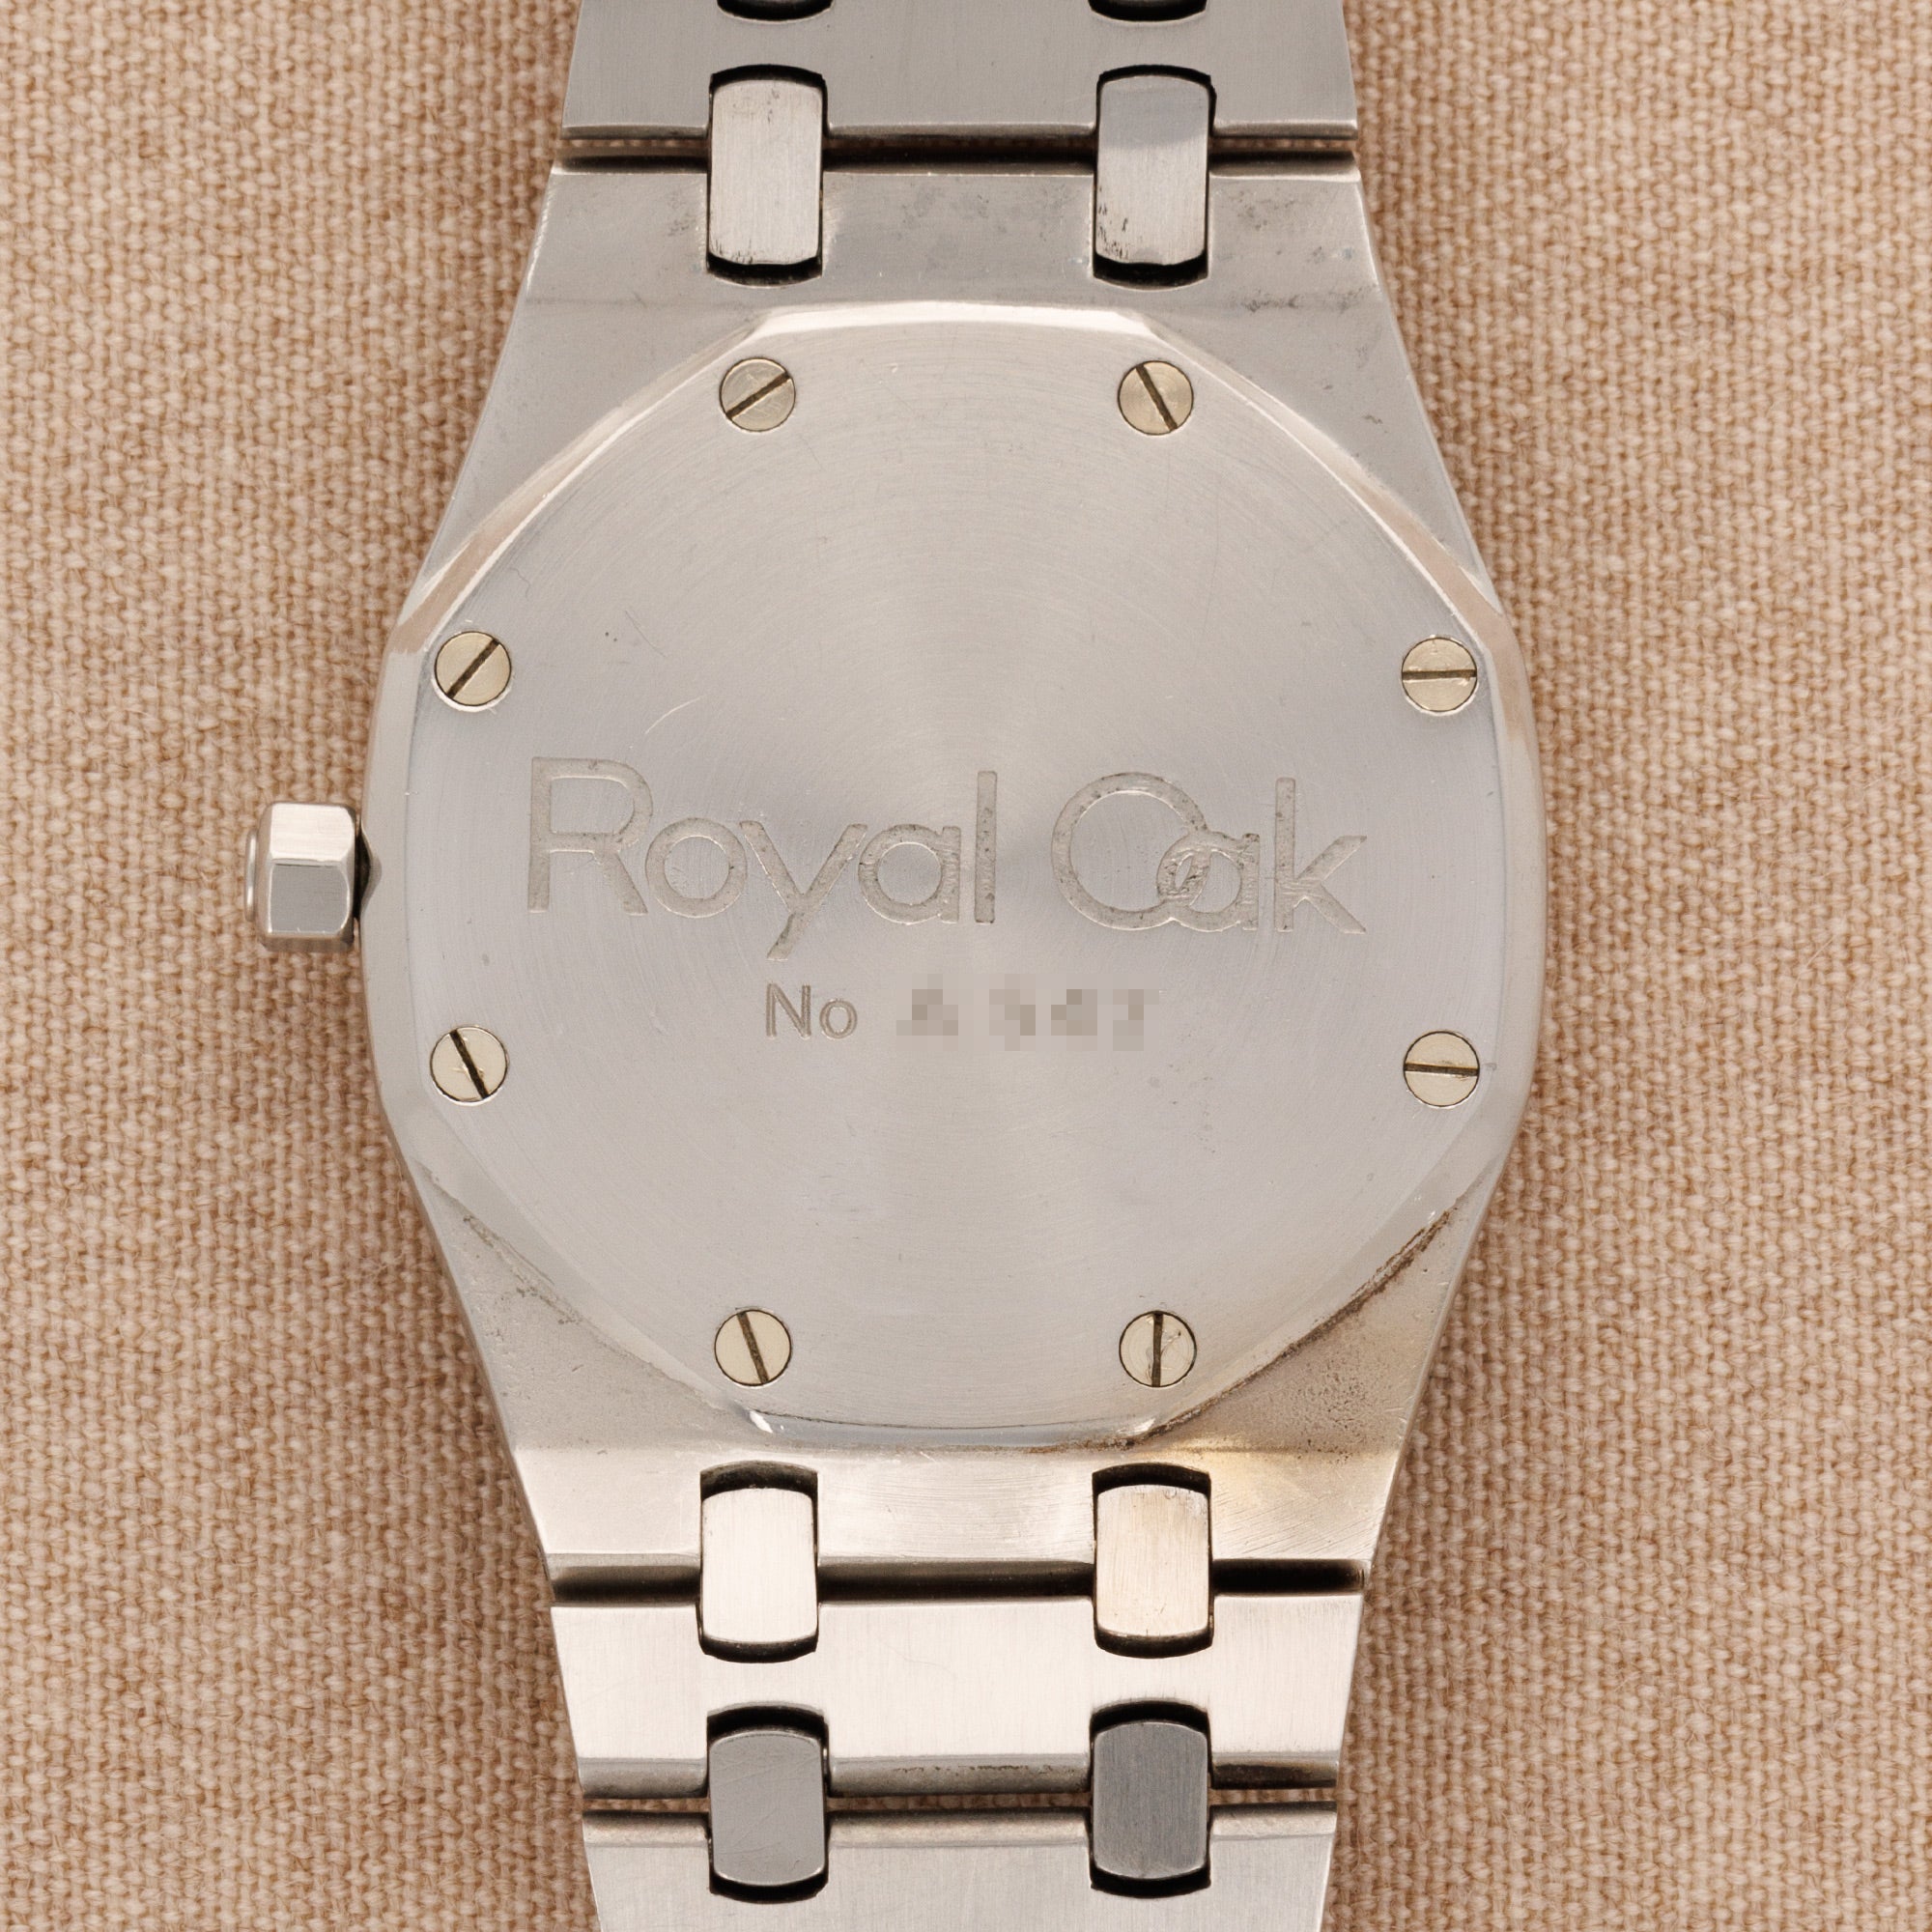 Audemars Piguet - Audemars Piguet Steel Royal Oak A-Series Watch Ref. 5402 - The Keystone Watches